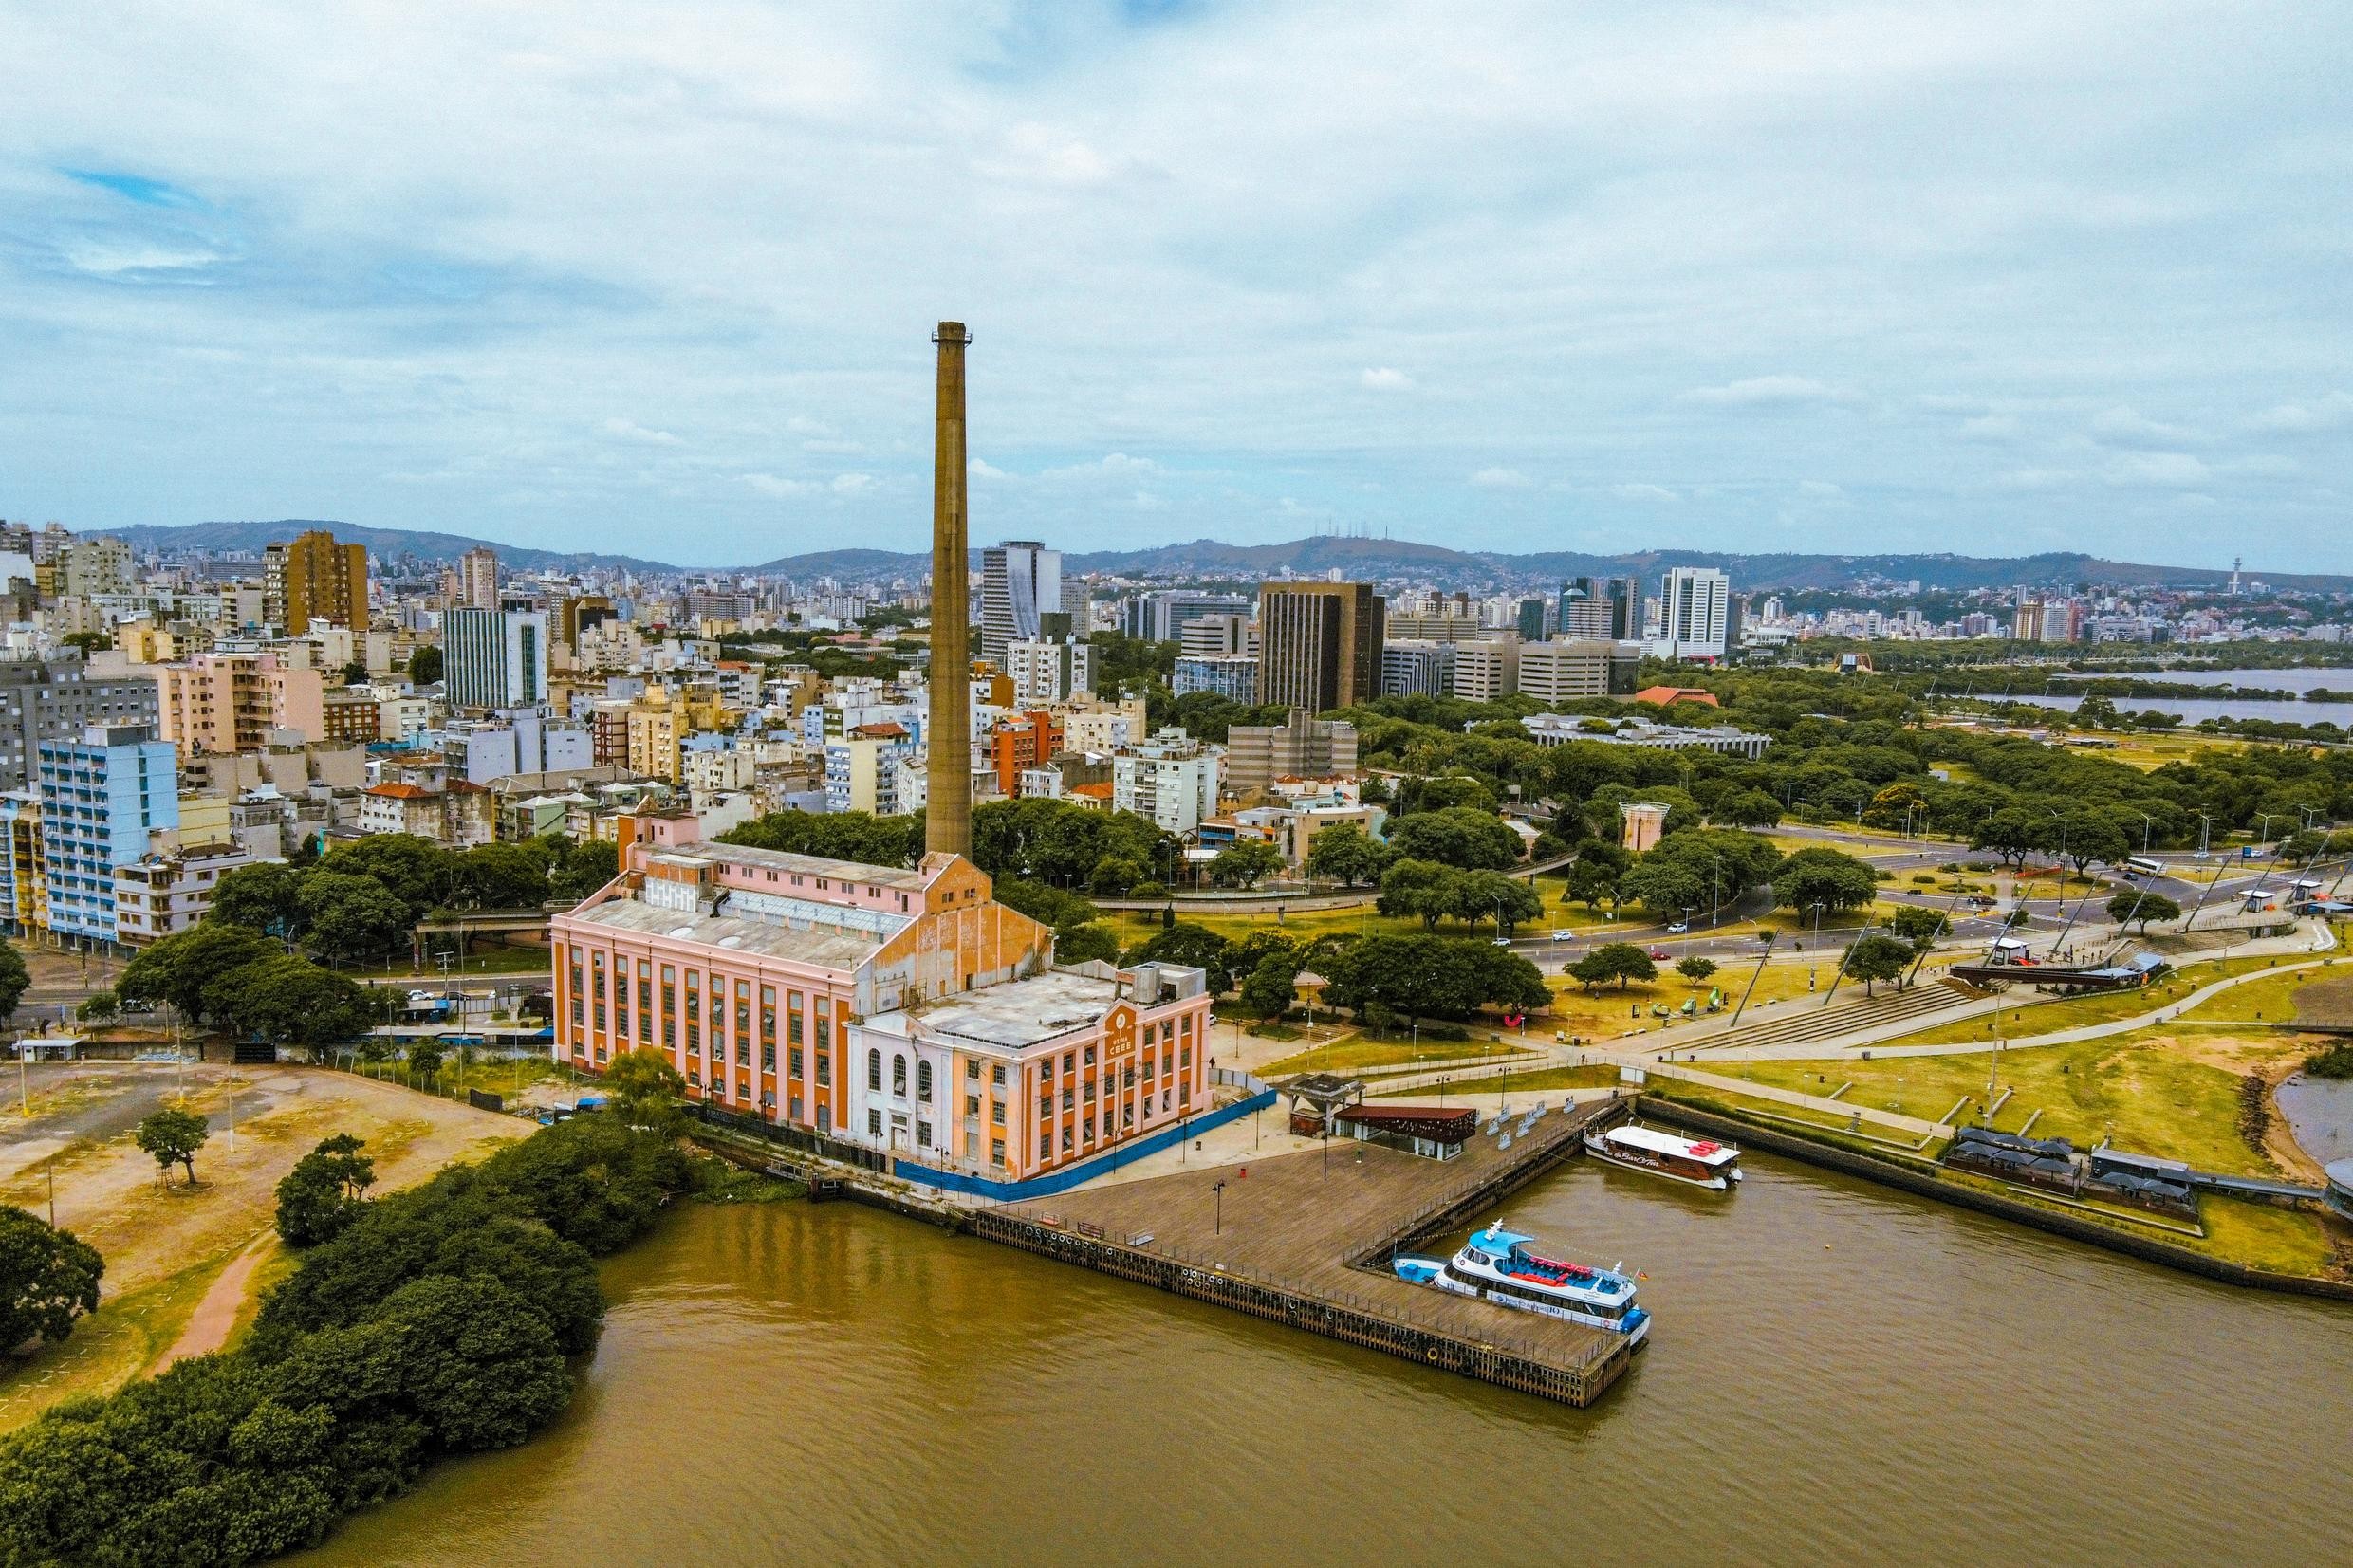 Formada por diferentes vozes, identidades e histórias: conheça a origem de Porto Alegre, que completa 252 anos